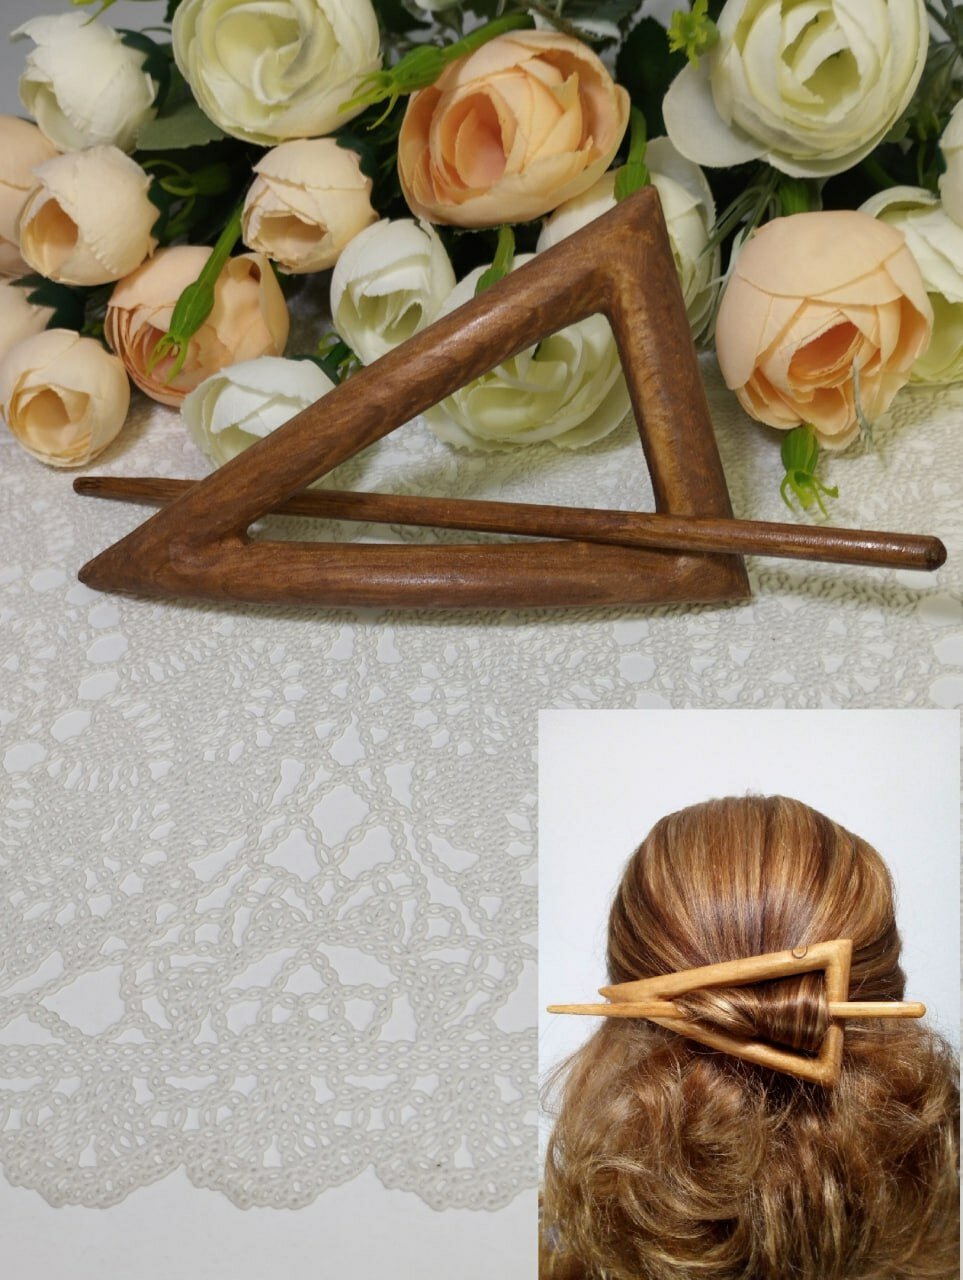 Заколка для волос Треугольник из сибирского кедра ручной работы, коричневая / Украшение ЭКО из дерева